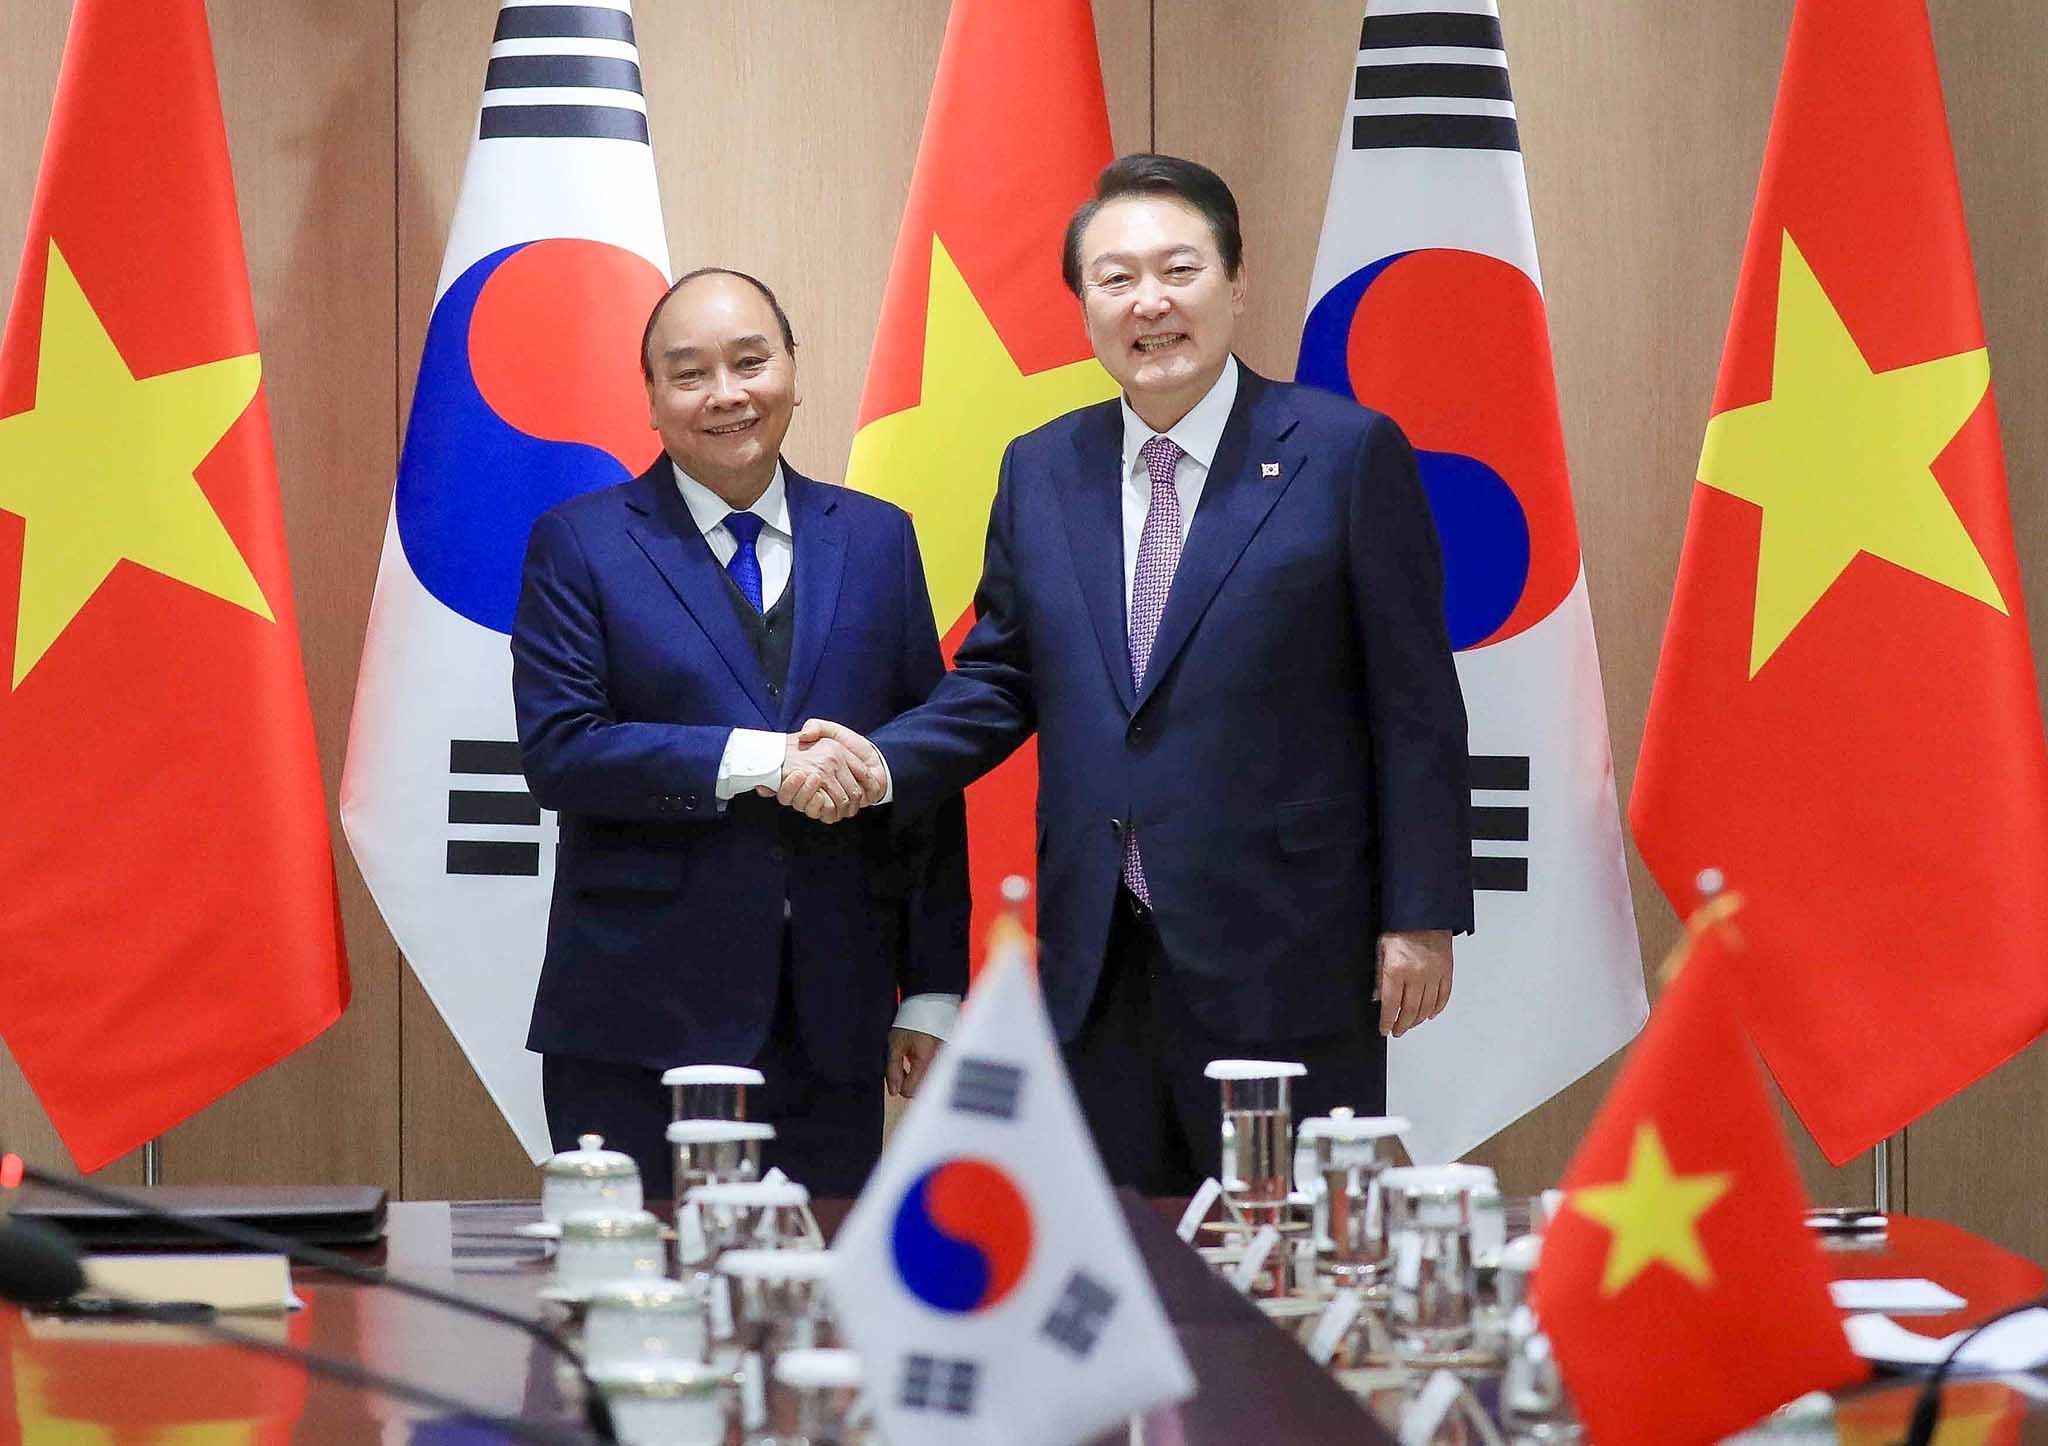 Lễ ký văn kiện Việt Nam-Hàn Quốc:
Lễ ký văn kiện Việt Nam-Hàn Quốc là một bước quan trọng trong việc tăng cường quan hệ giữa hai quốc gia. Với nhiều thỏa thuận được ký kết, hai bên mong muốn mang lại lợi ích chung cho cả Việt Nam và Hàn Quốc, và điều này sẽ tạo cơ hội phát triển to lớn cho mỗi quốc gia.